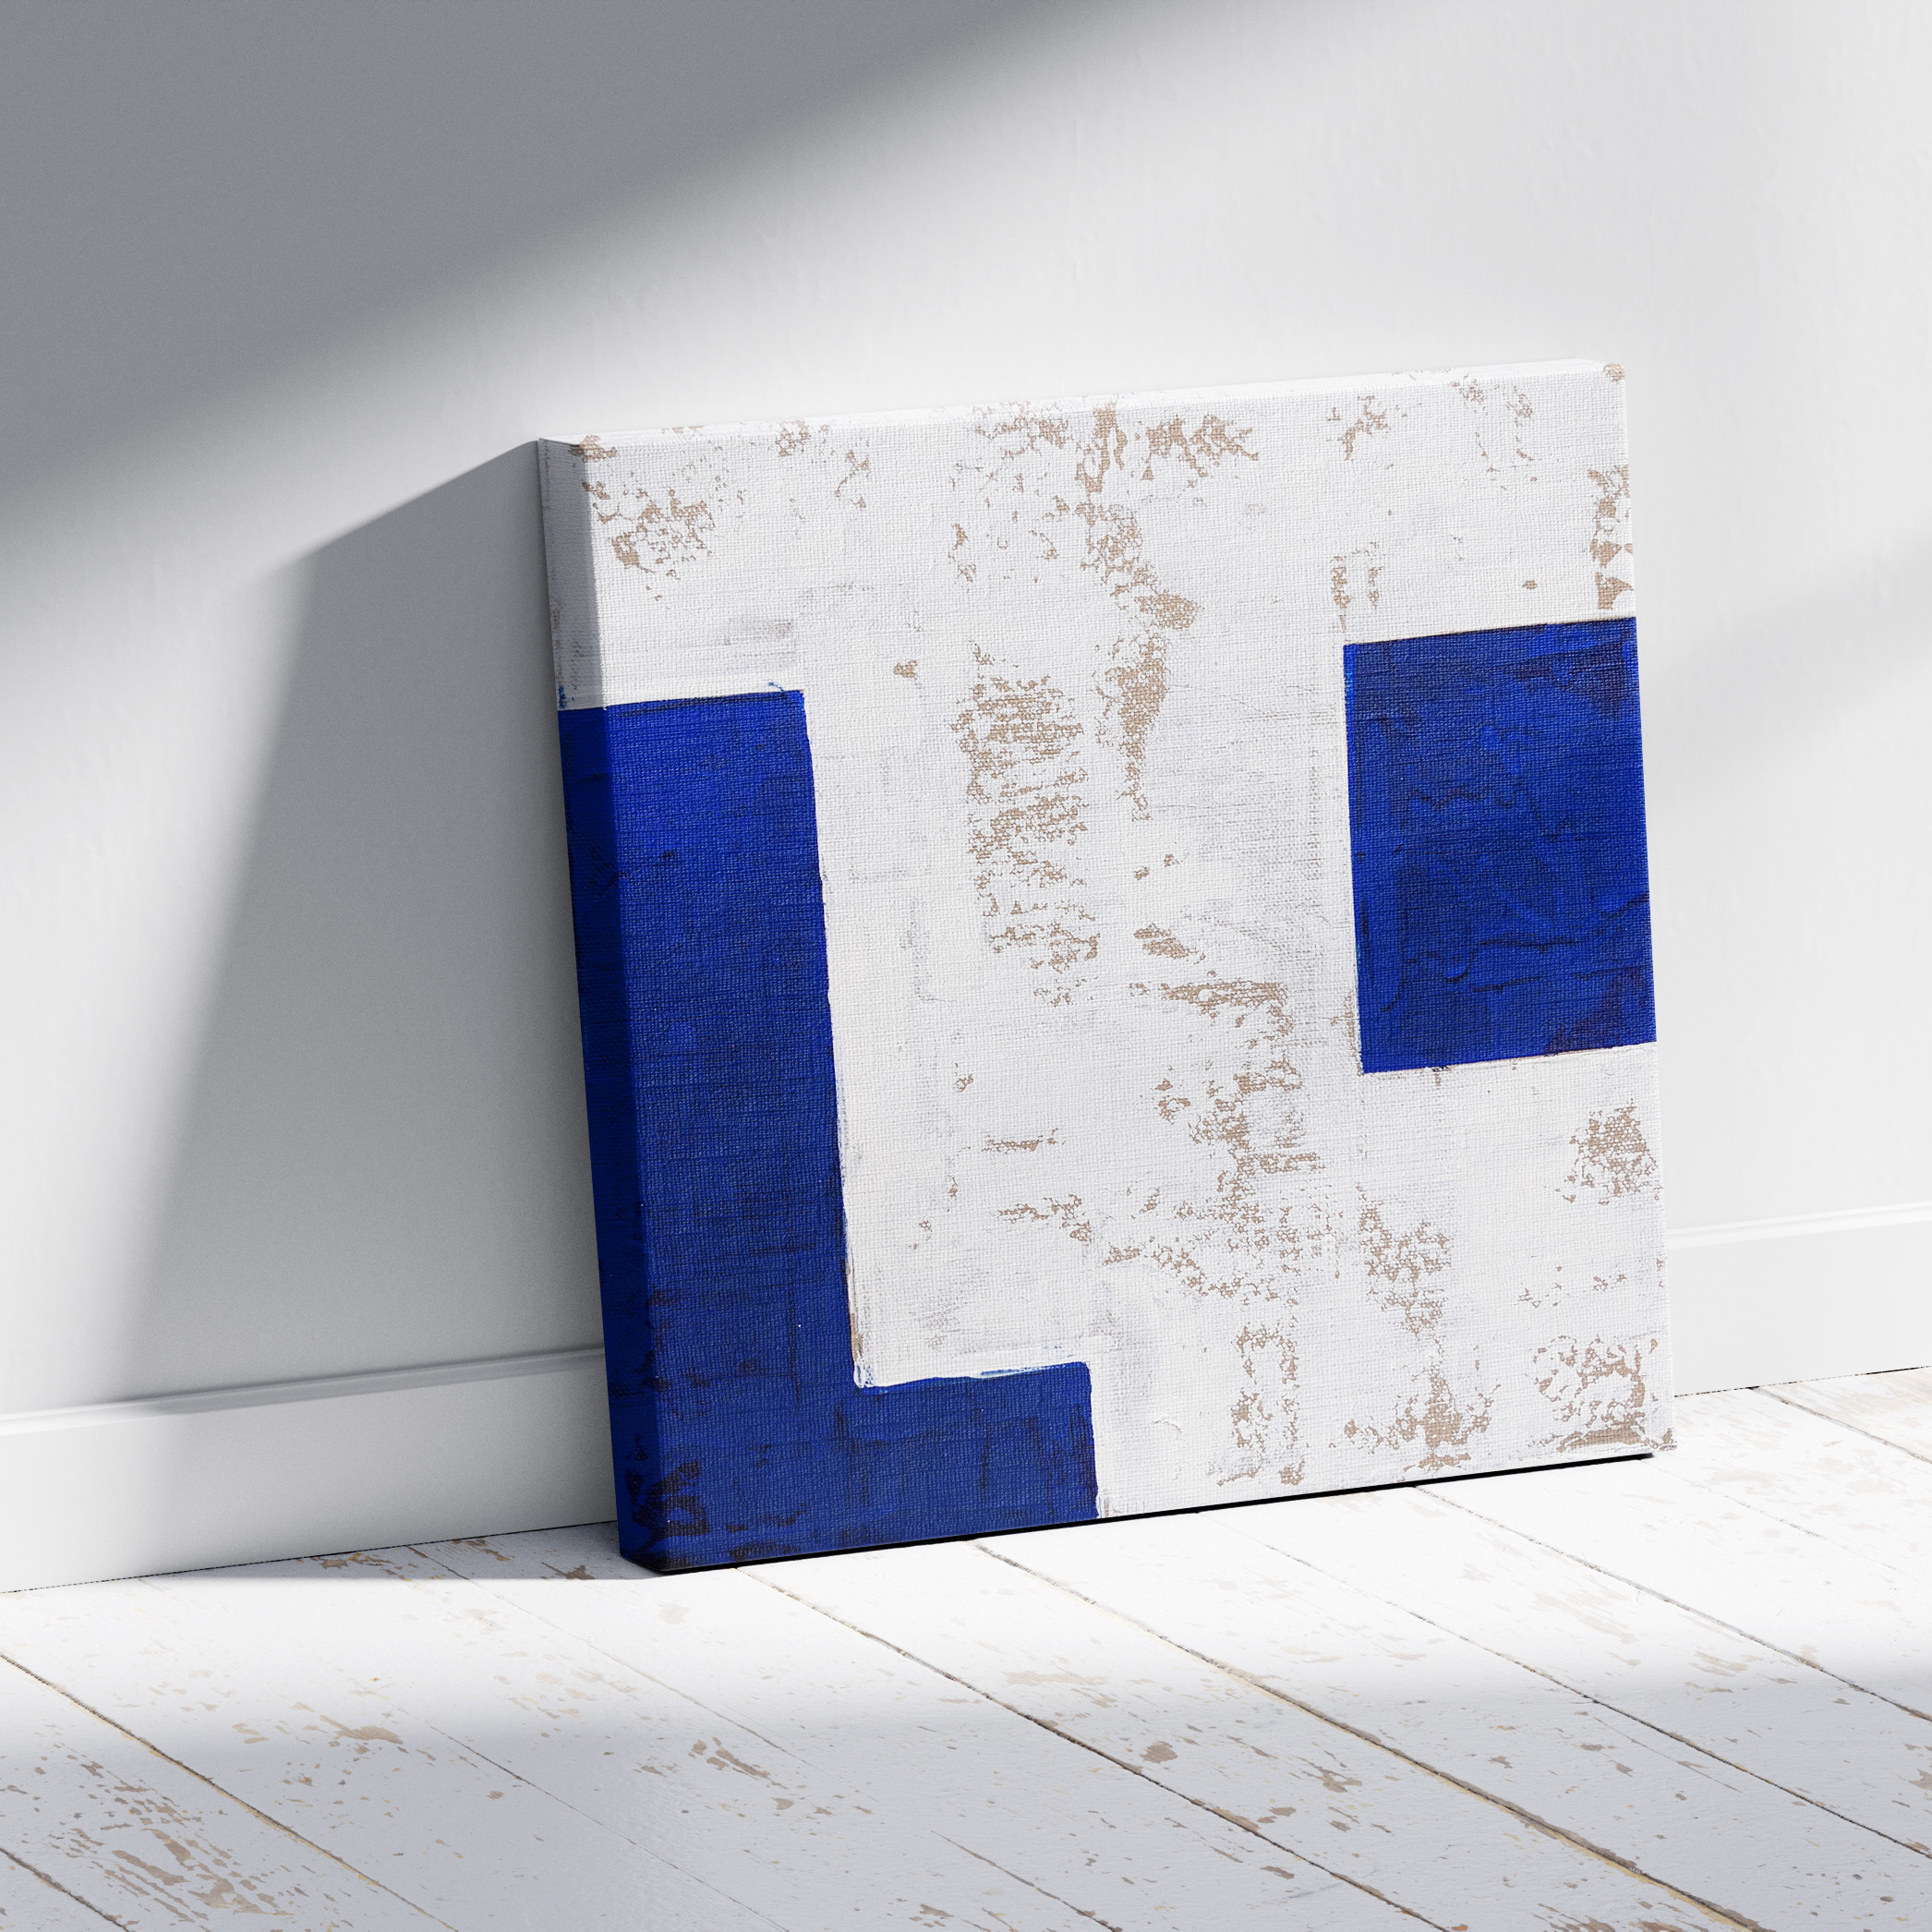 MK100 - Tableau abstrait décoration moderne - Peinture murale bleu et blanc